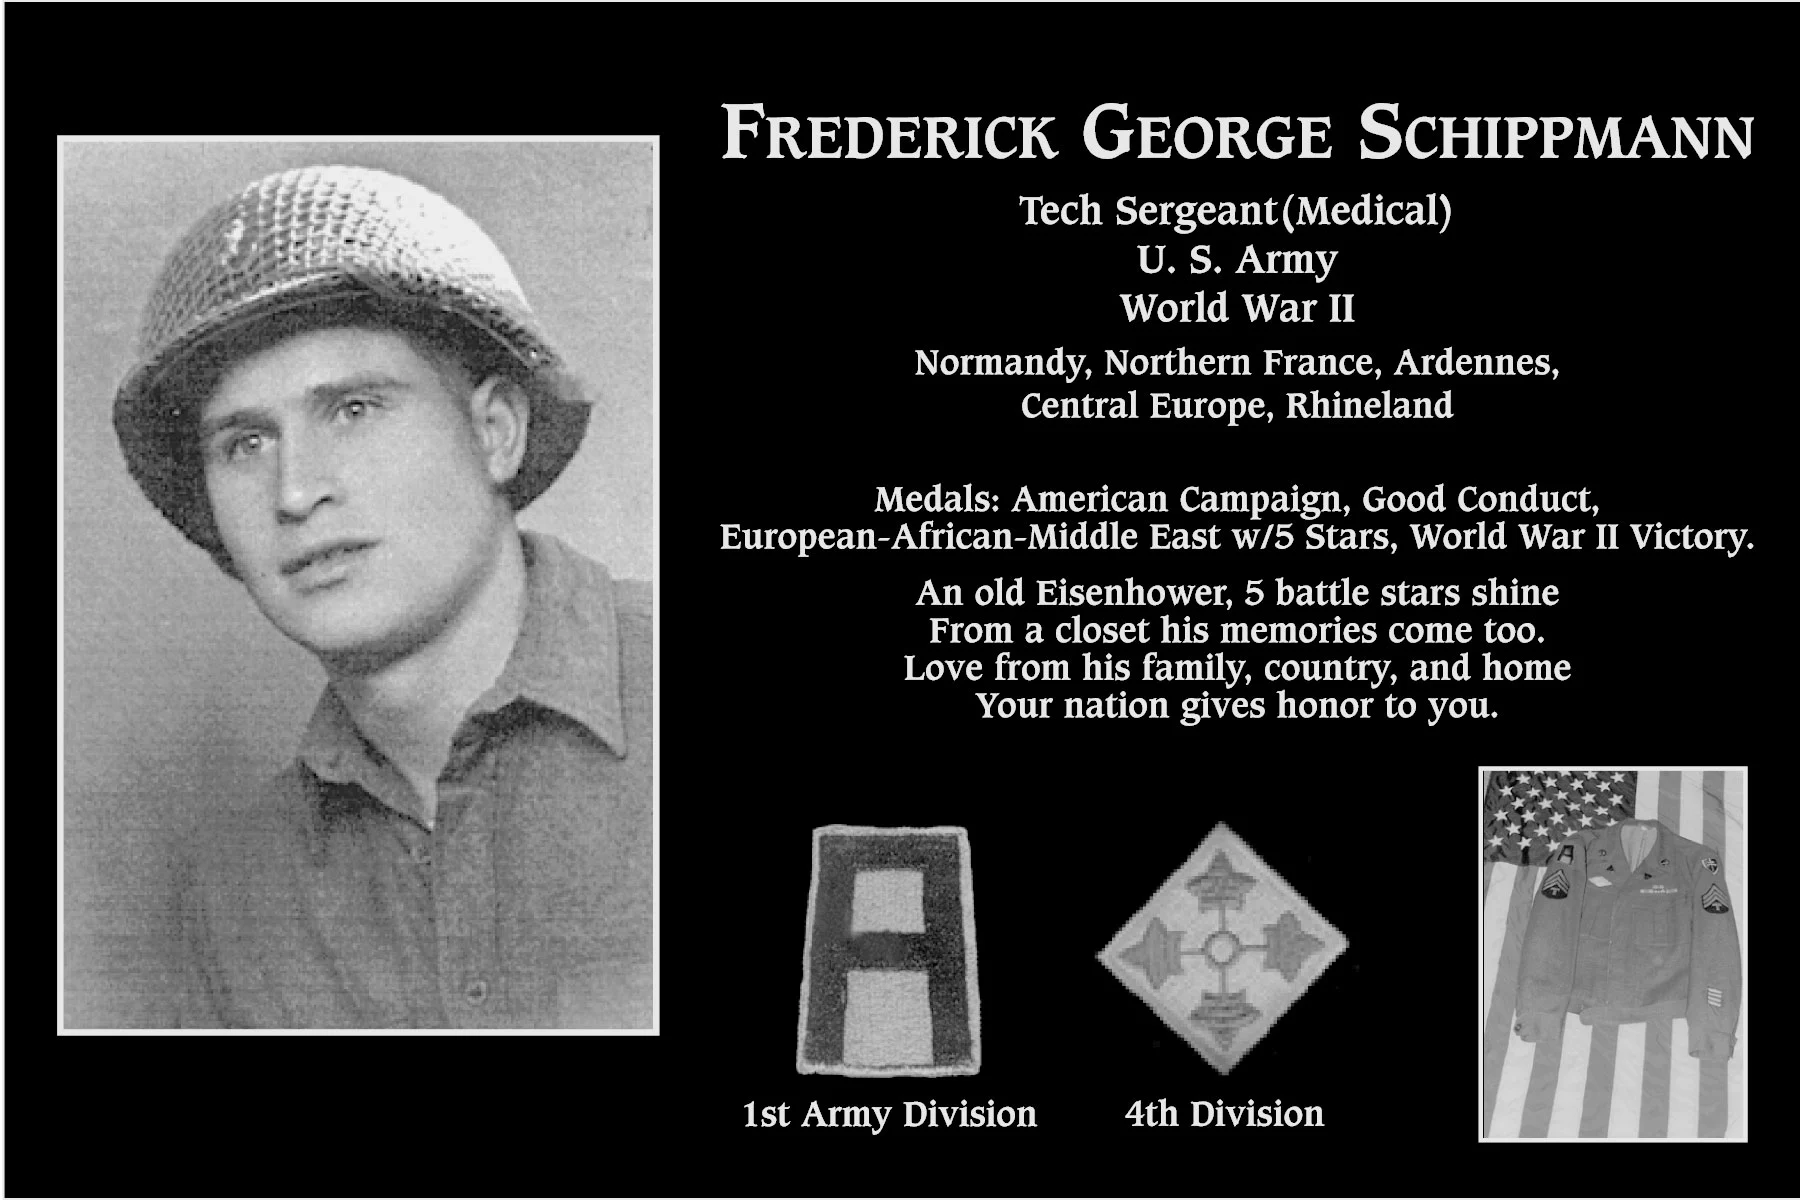 Frederick George Schippmann